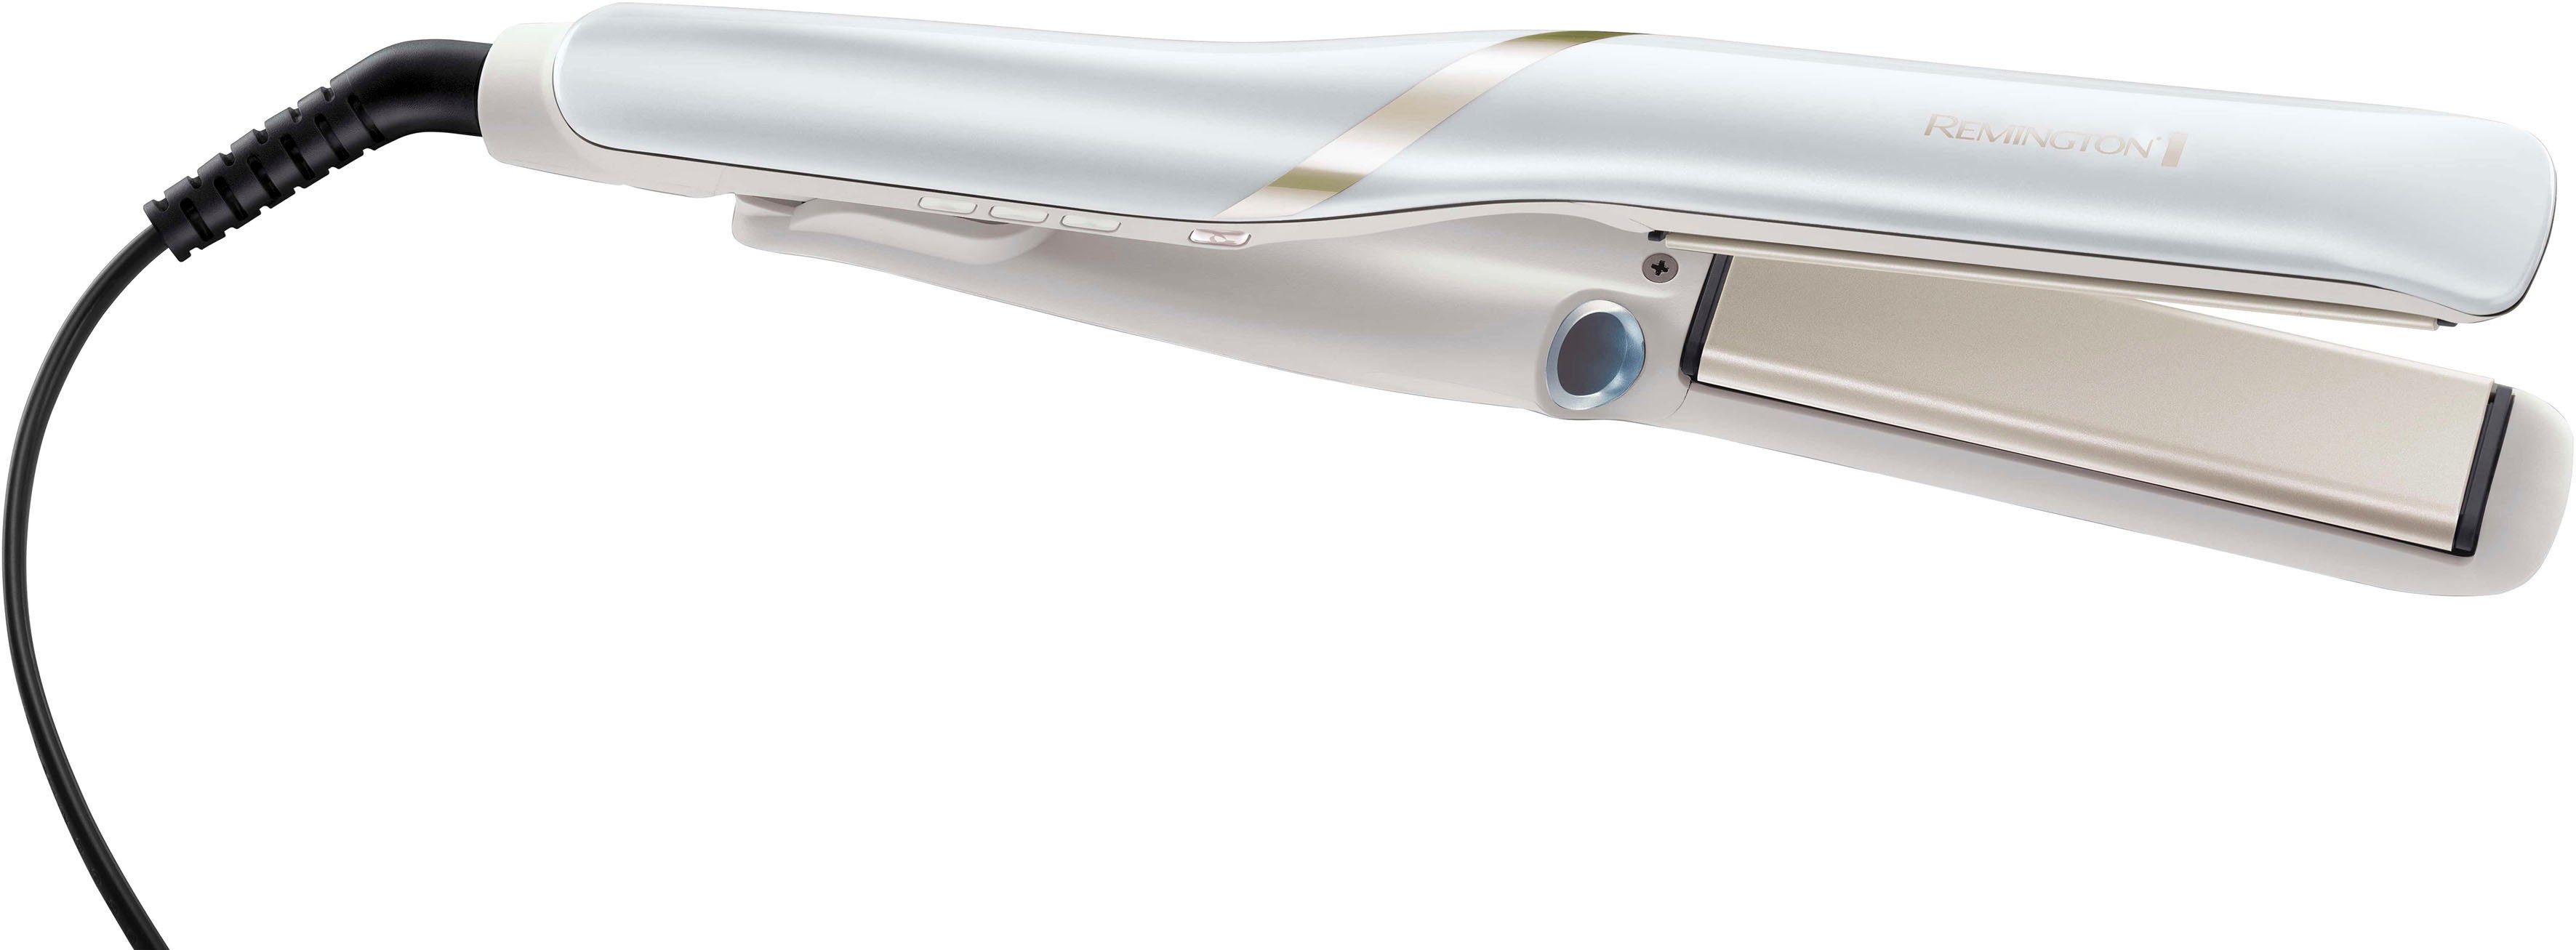 Haarglätter mit langanhaltende Nebel Remington S9001, Glätteisen Keramik-Beschichtung, - PRO, ohne Ergebnisse HYDRAluxe Hitzeschäden